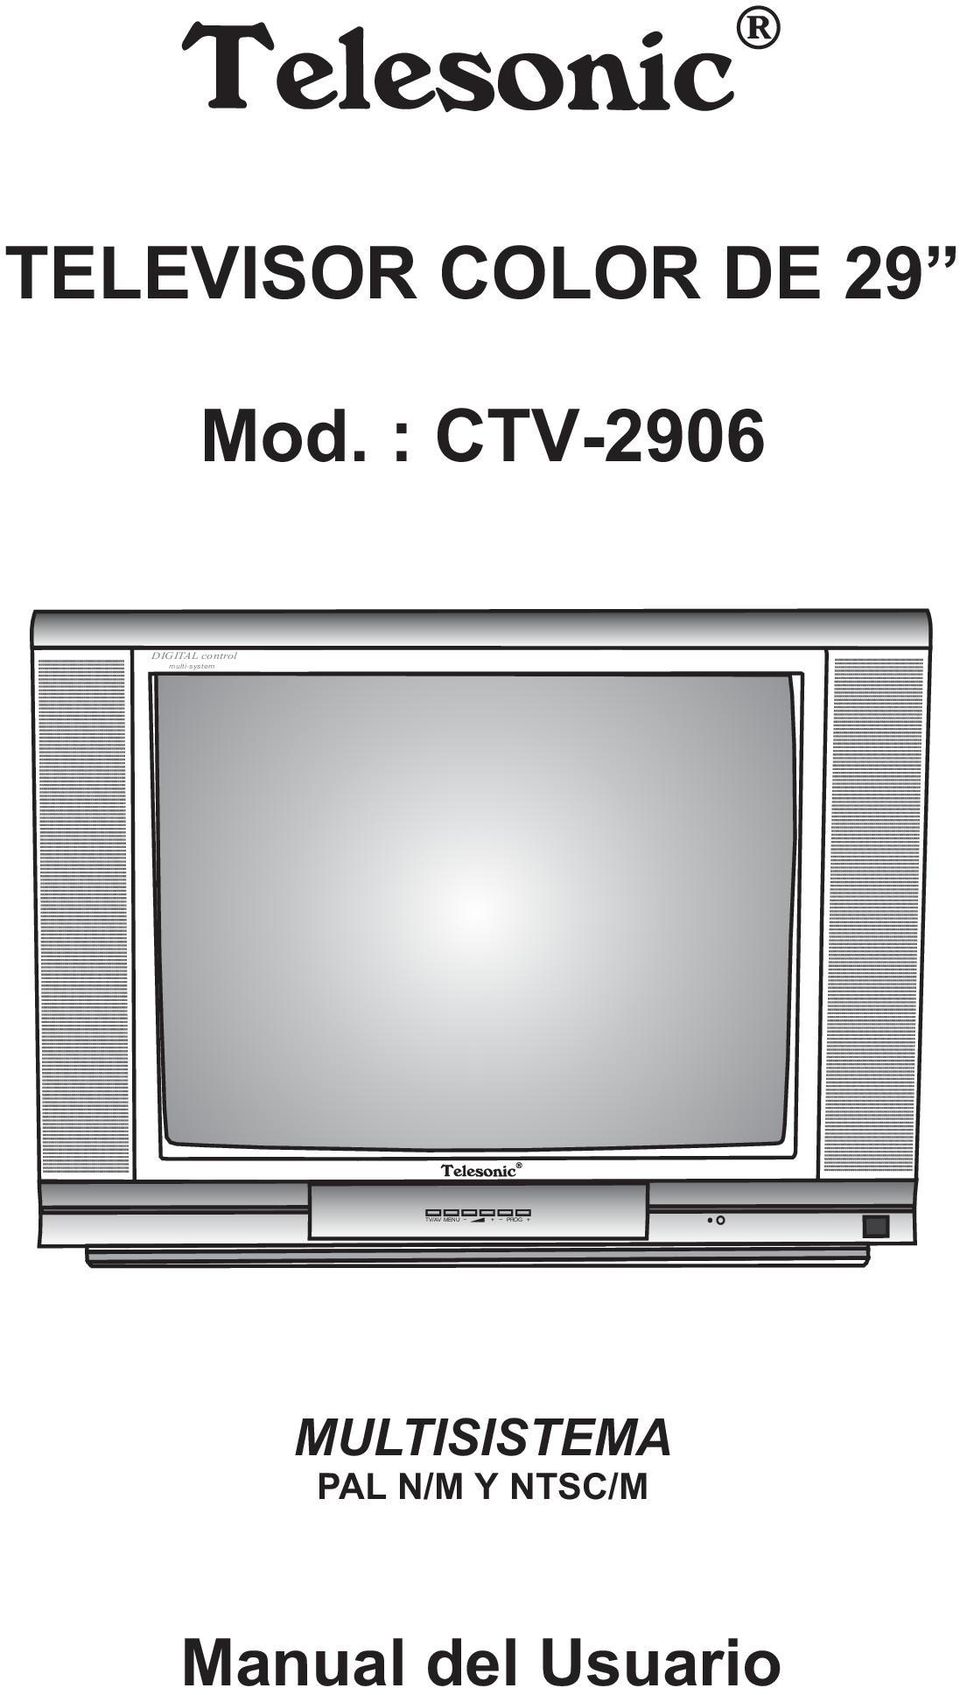 : CTV-2906 DIGITA control